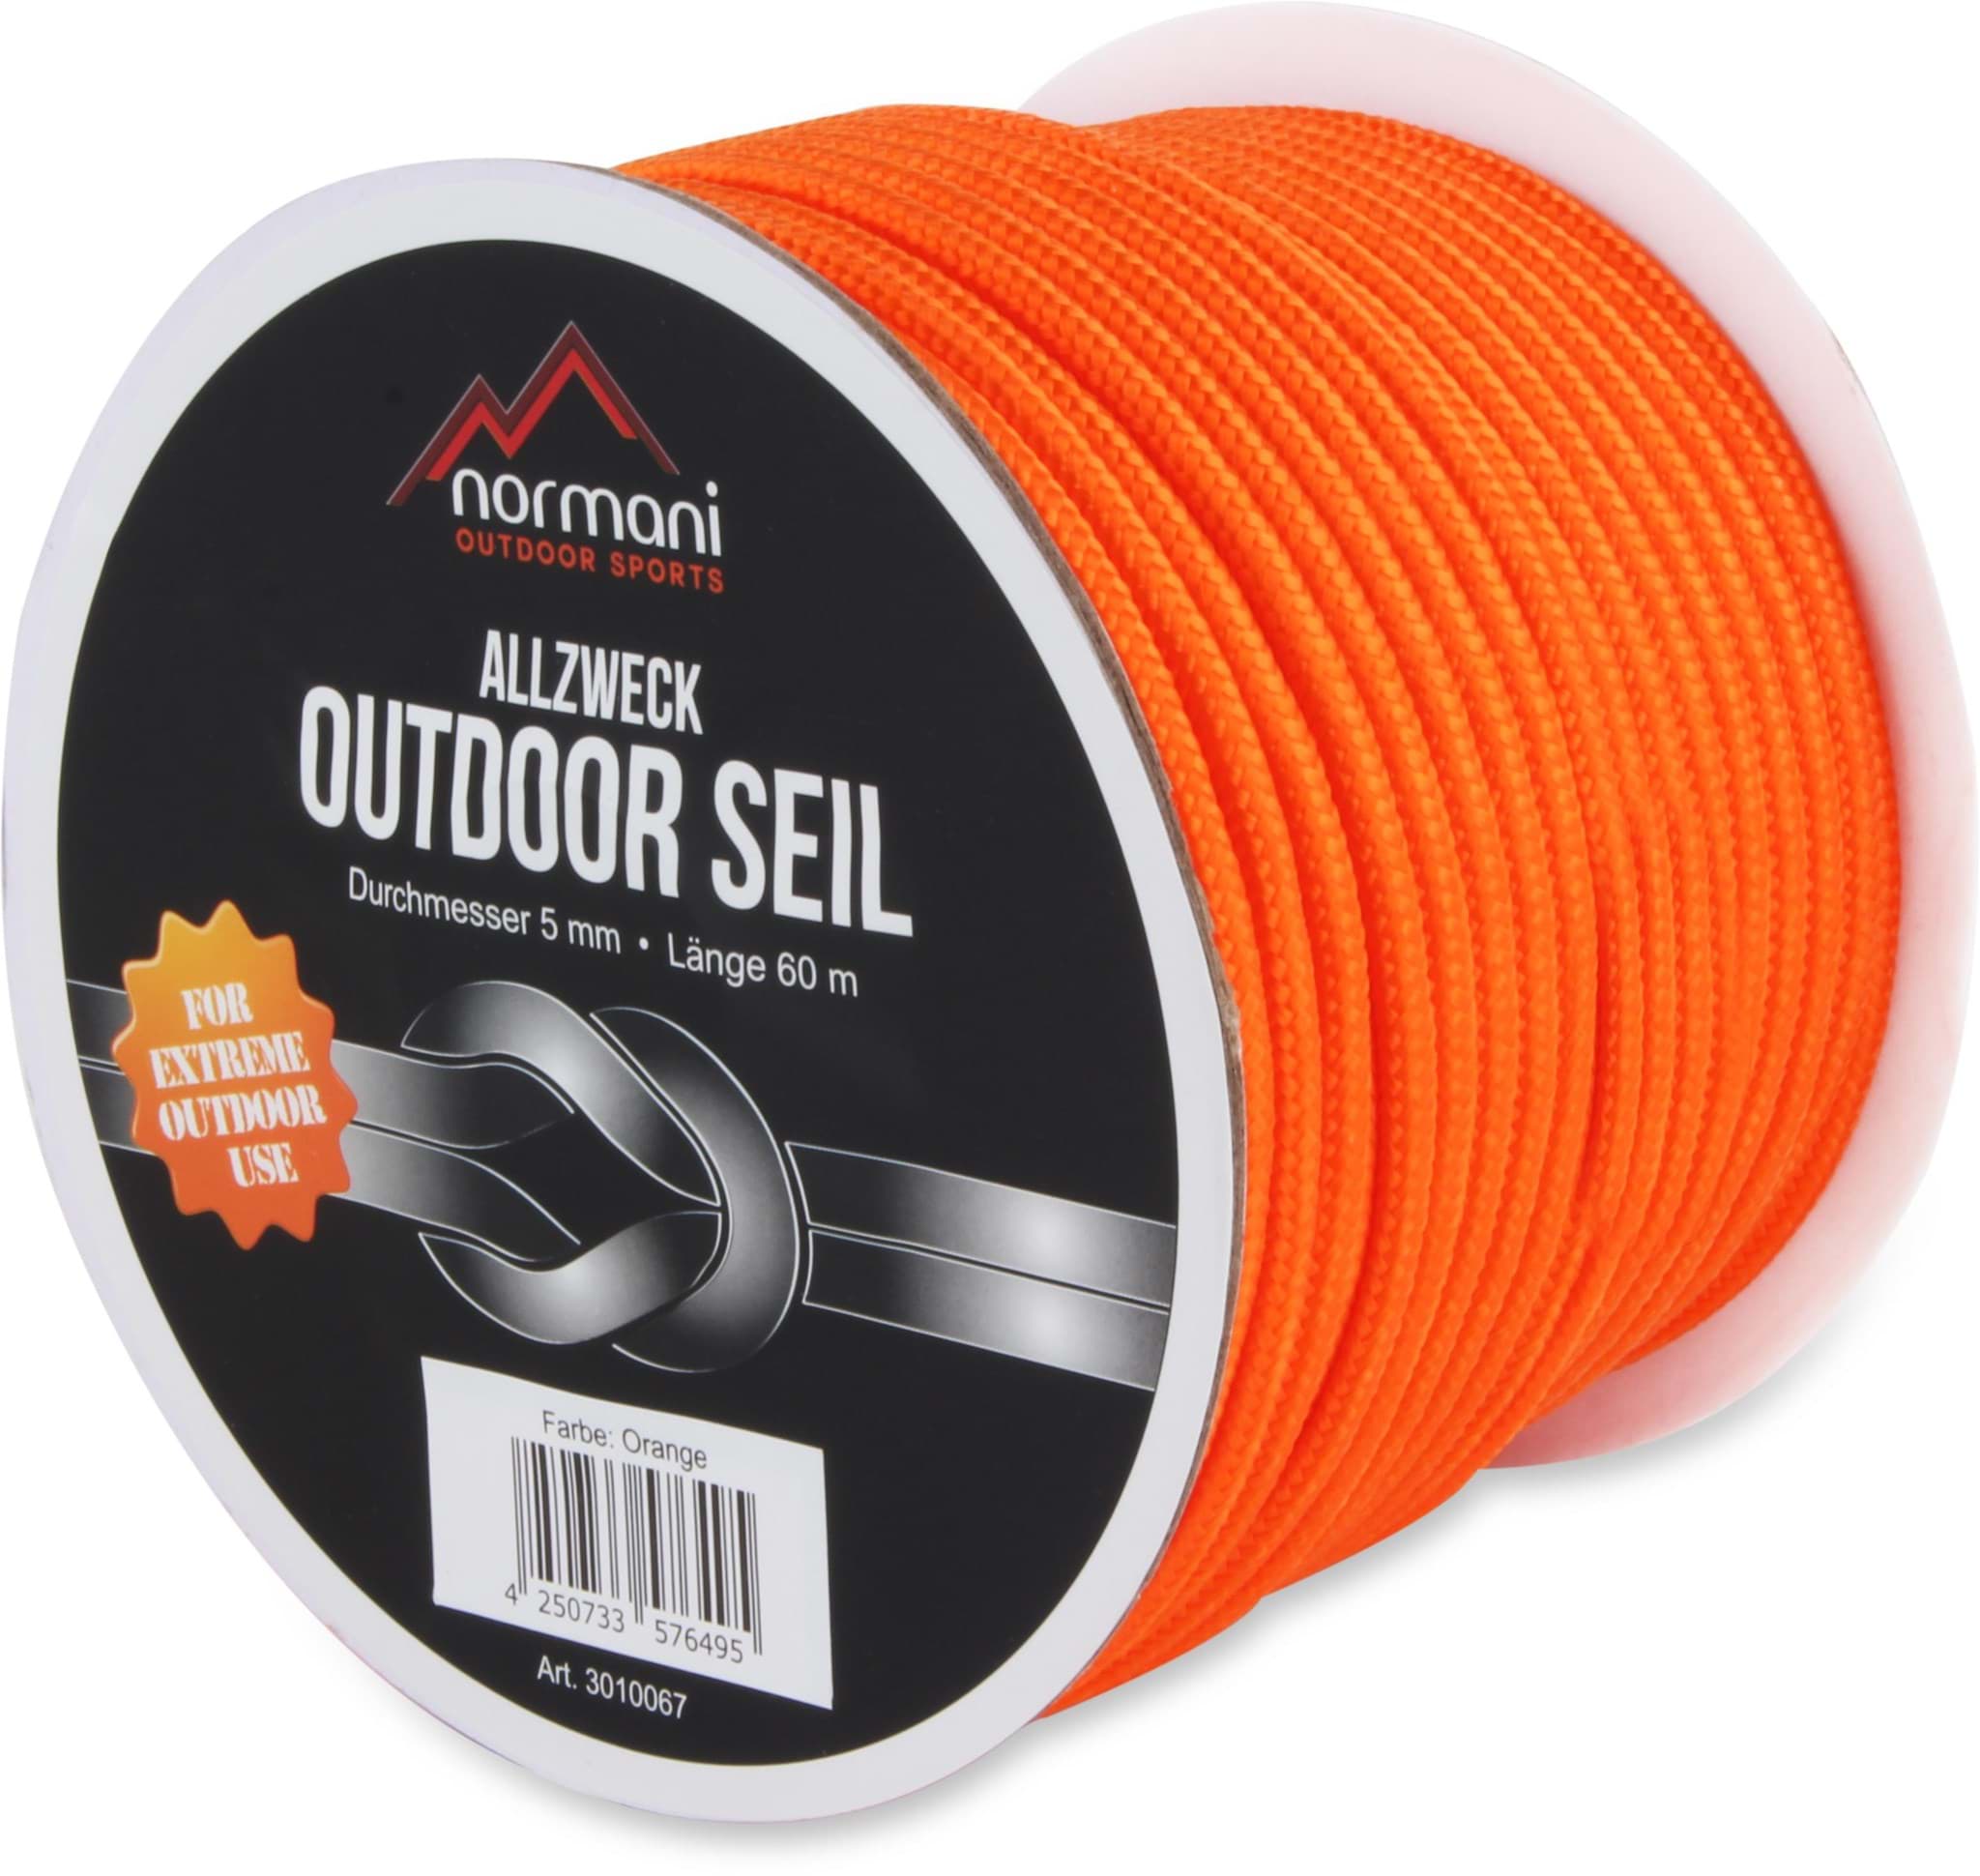 Bild von Allzweck-Outdoor-Seil „Chetwynd“ 5 mm x 60 m Orange